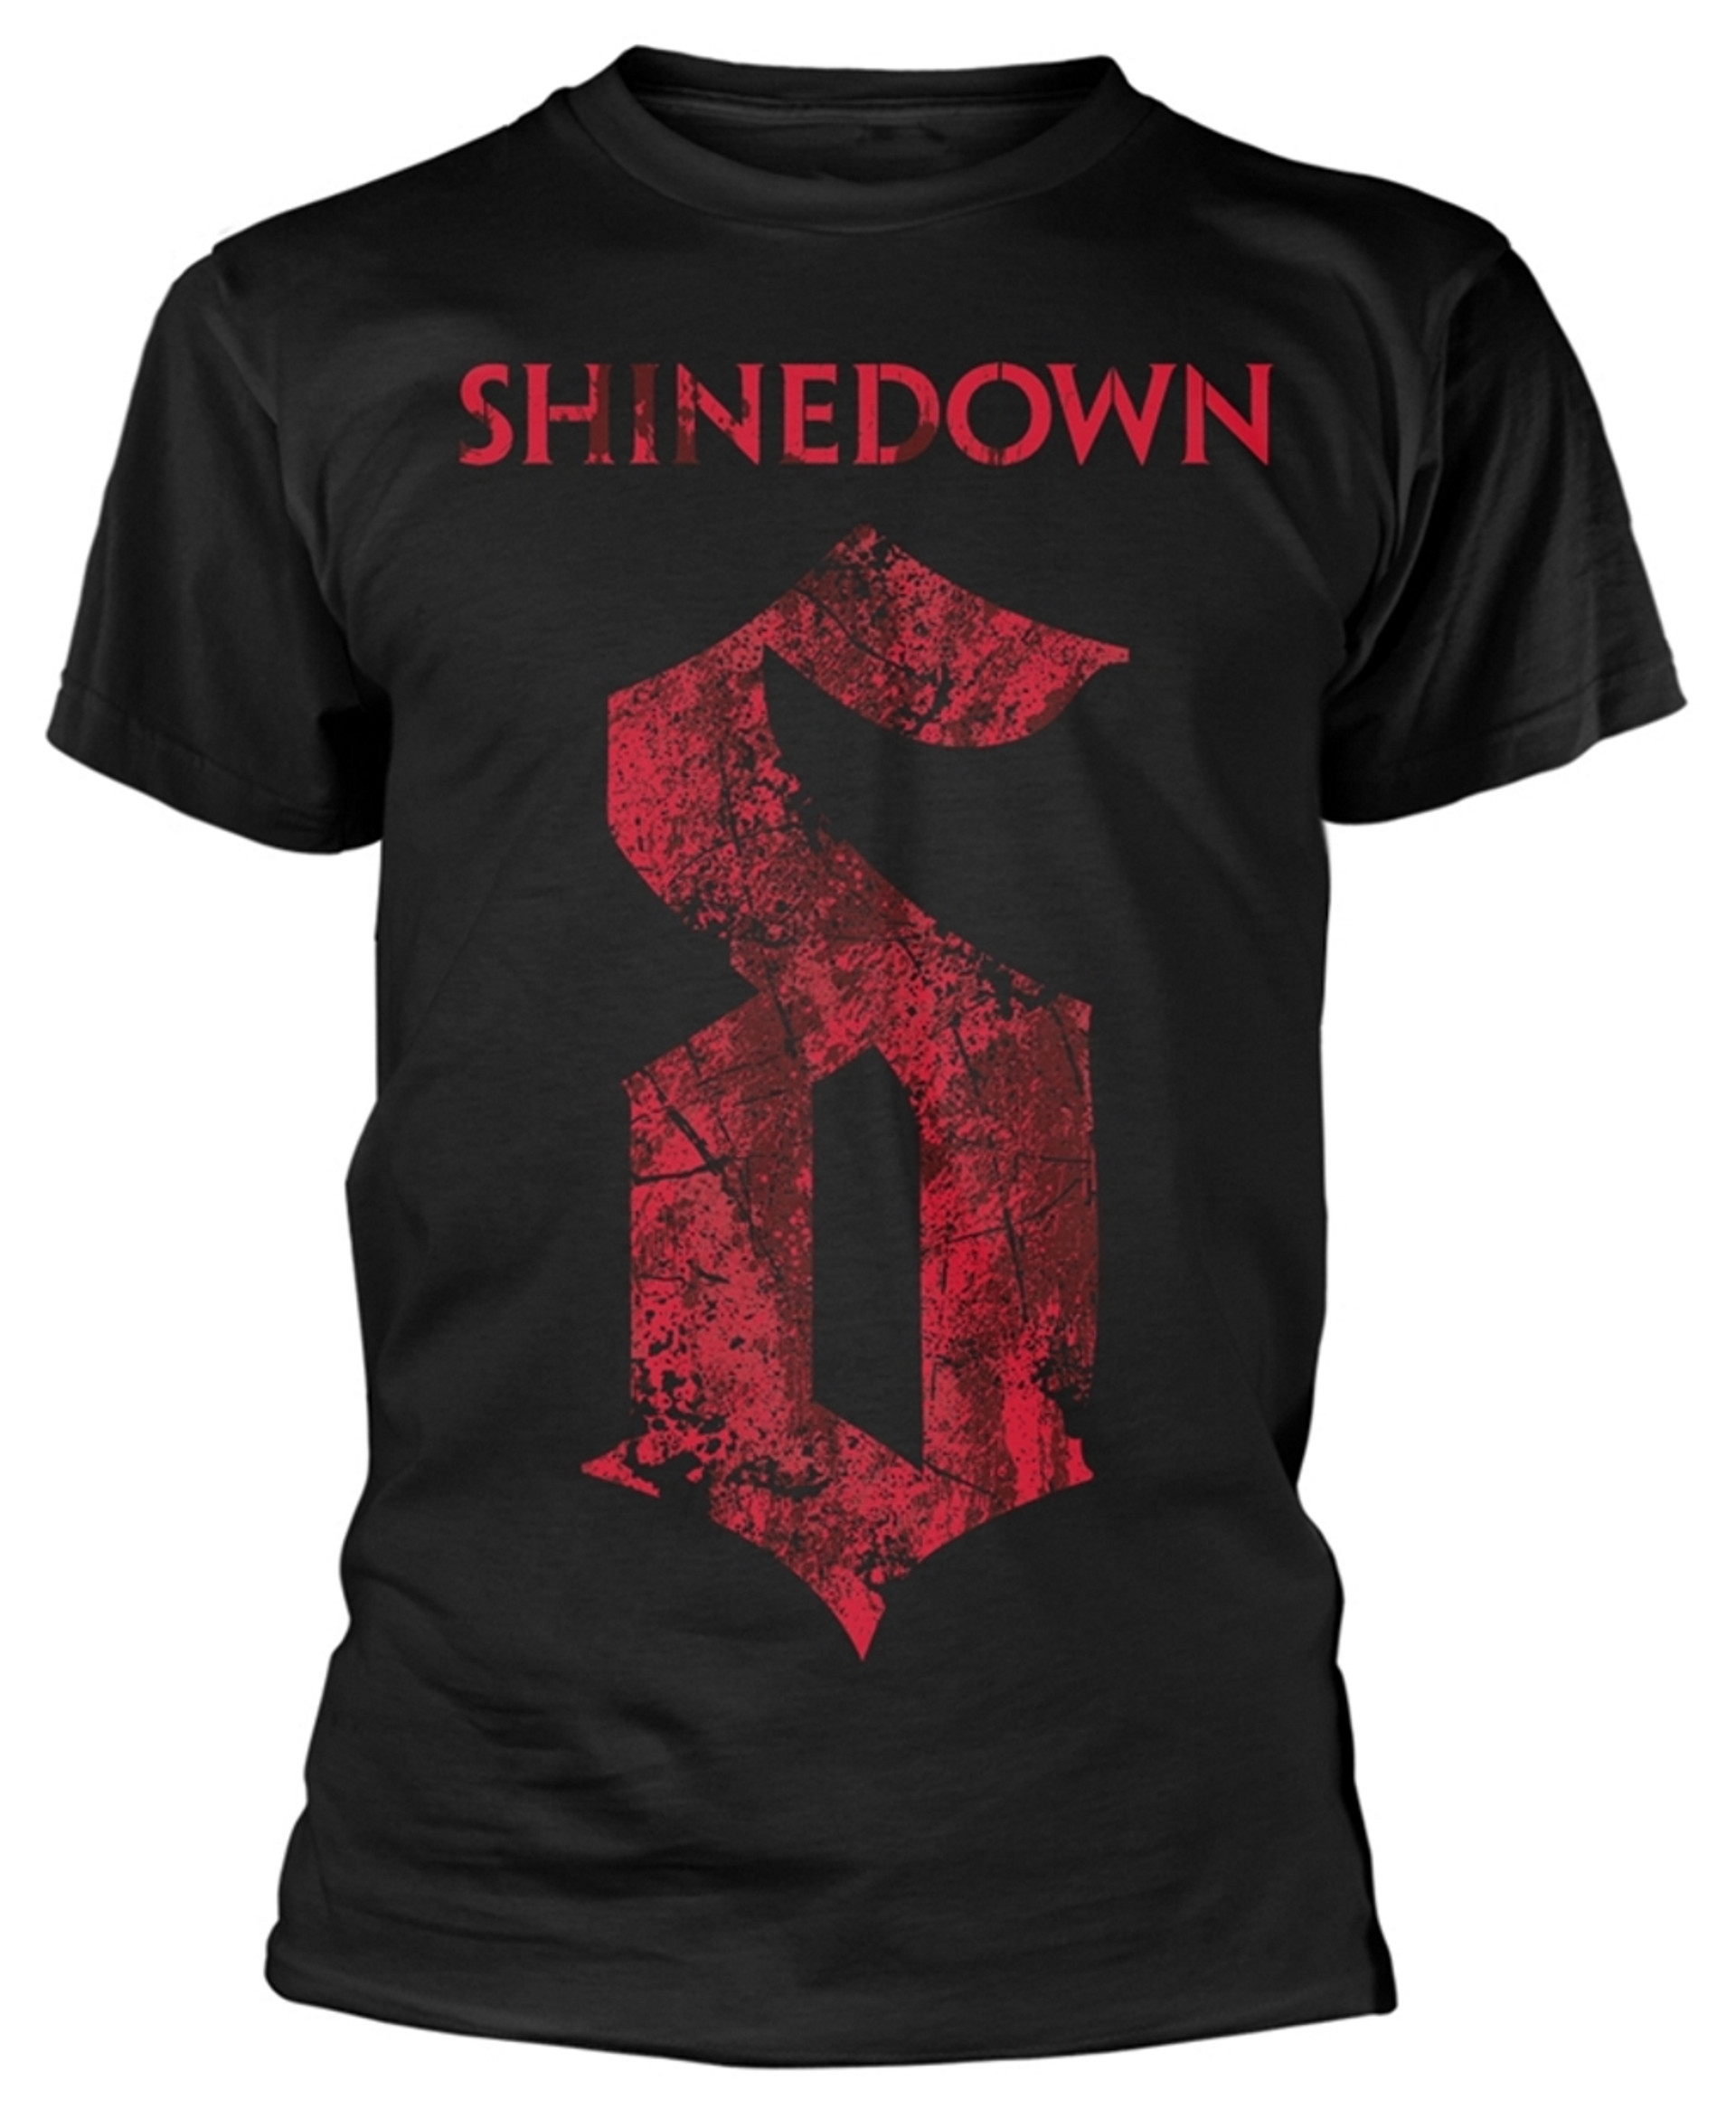 Shinedown Zero' (Black) TShirt